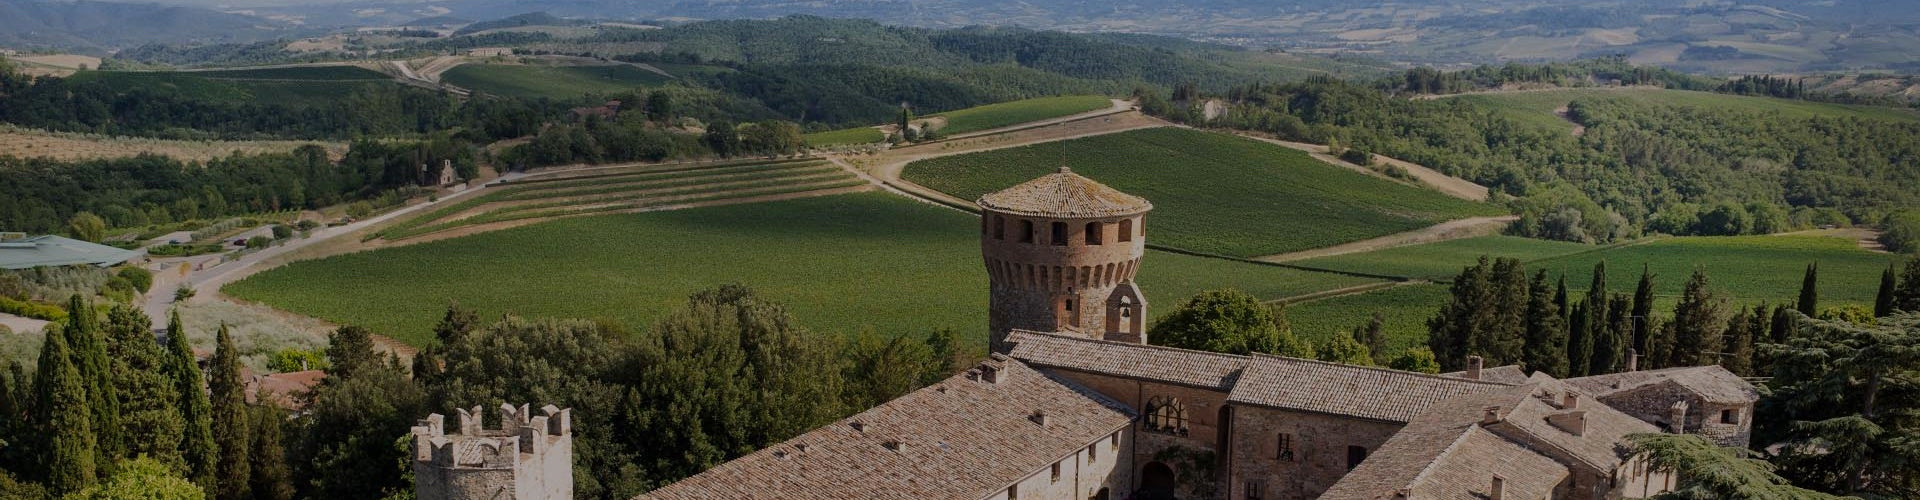 Castello della Sala in Umbria, Italy